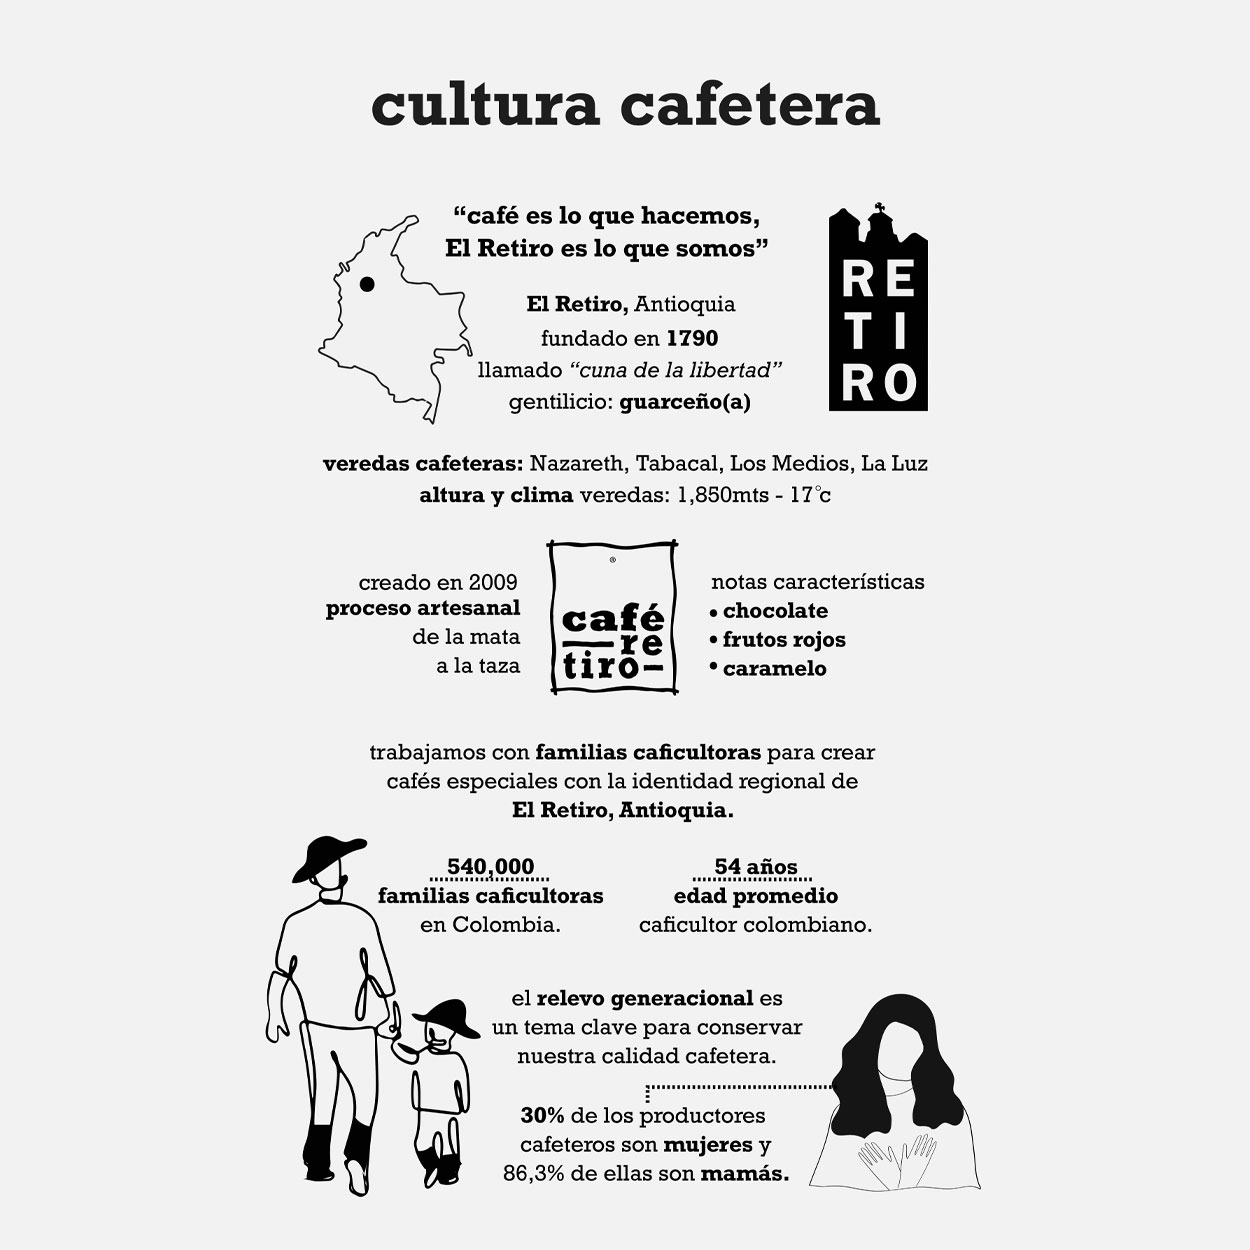 edicion_cultura_cafetera_2022_10